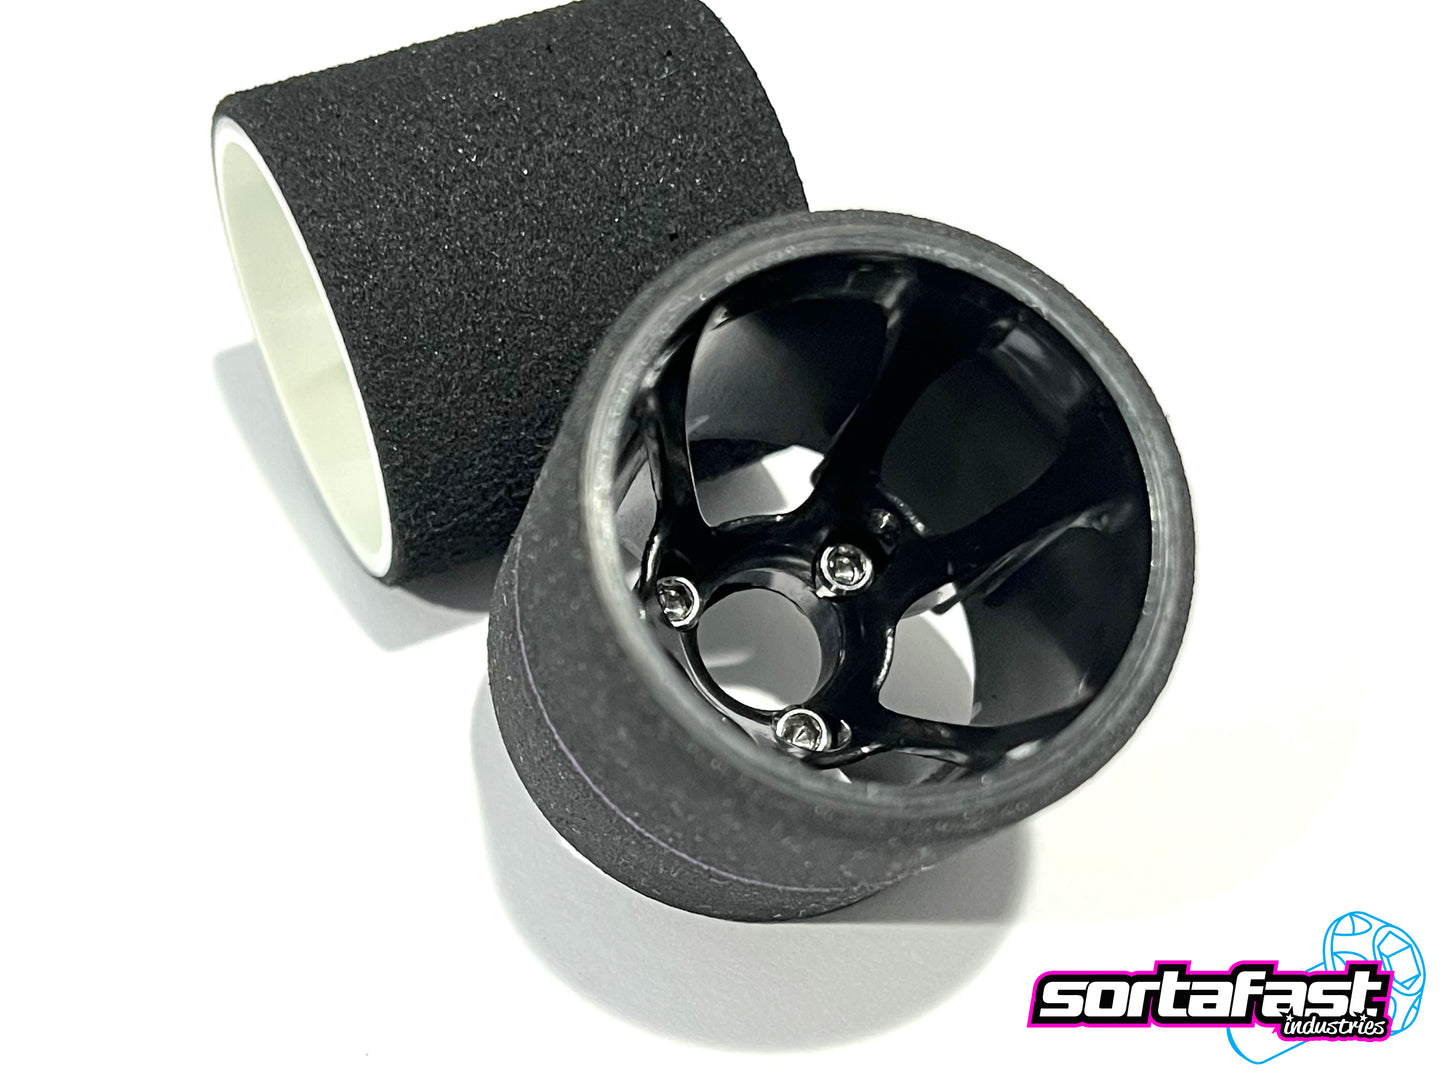 Sortafast Titanium Screws - Pan Car Rear Wheel / Cap Head - 8pk (Metric)